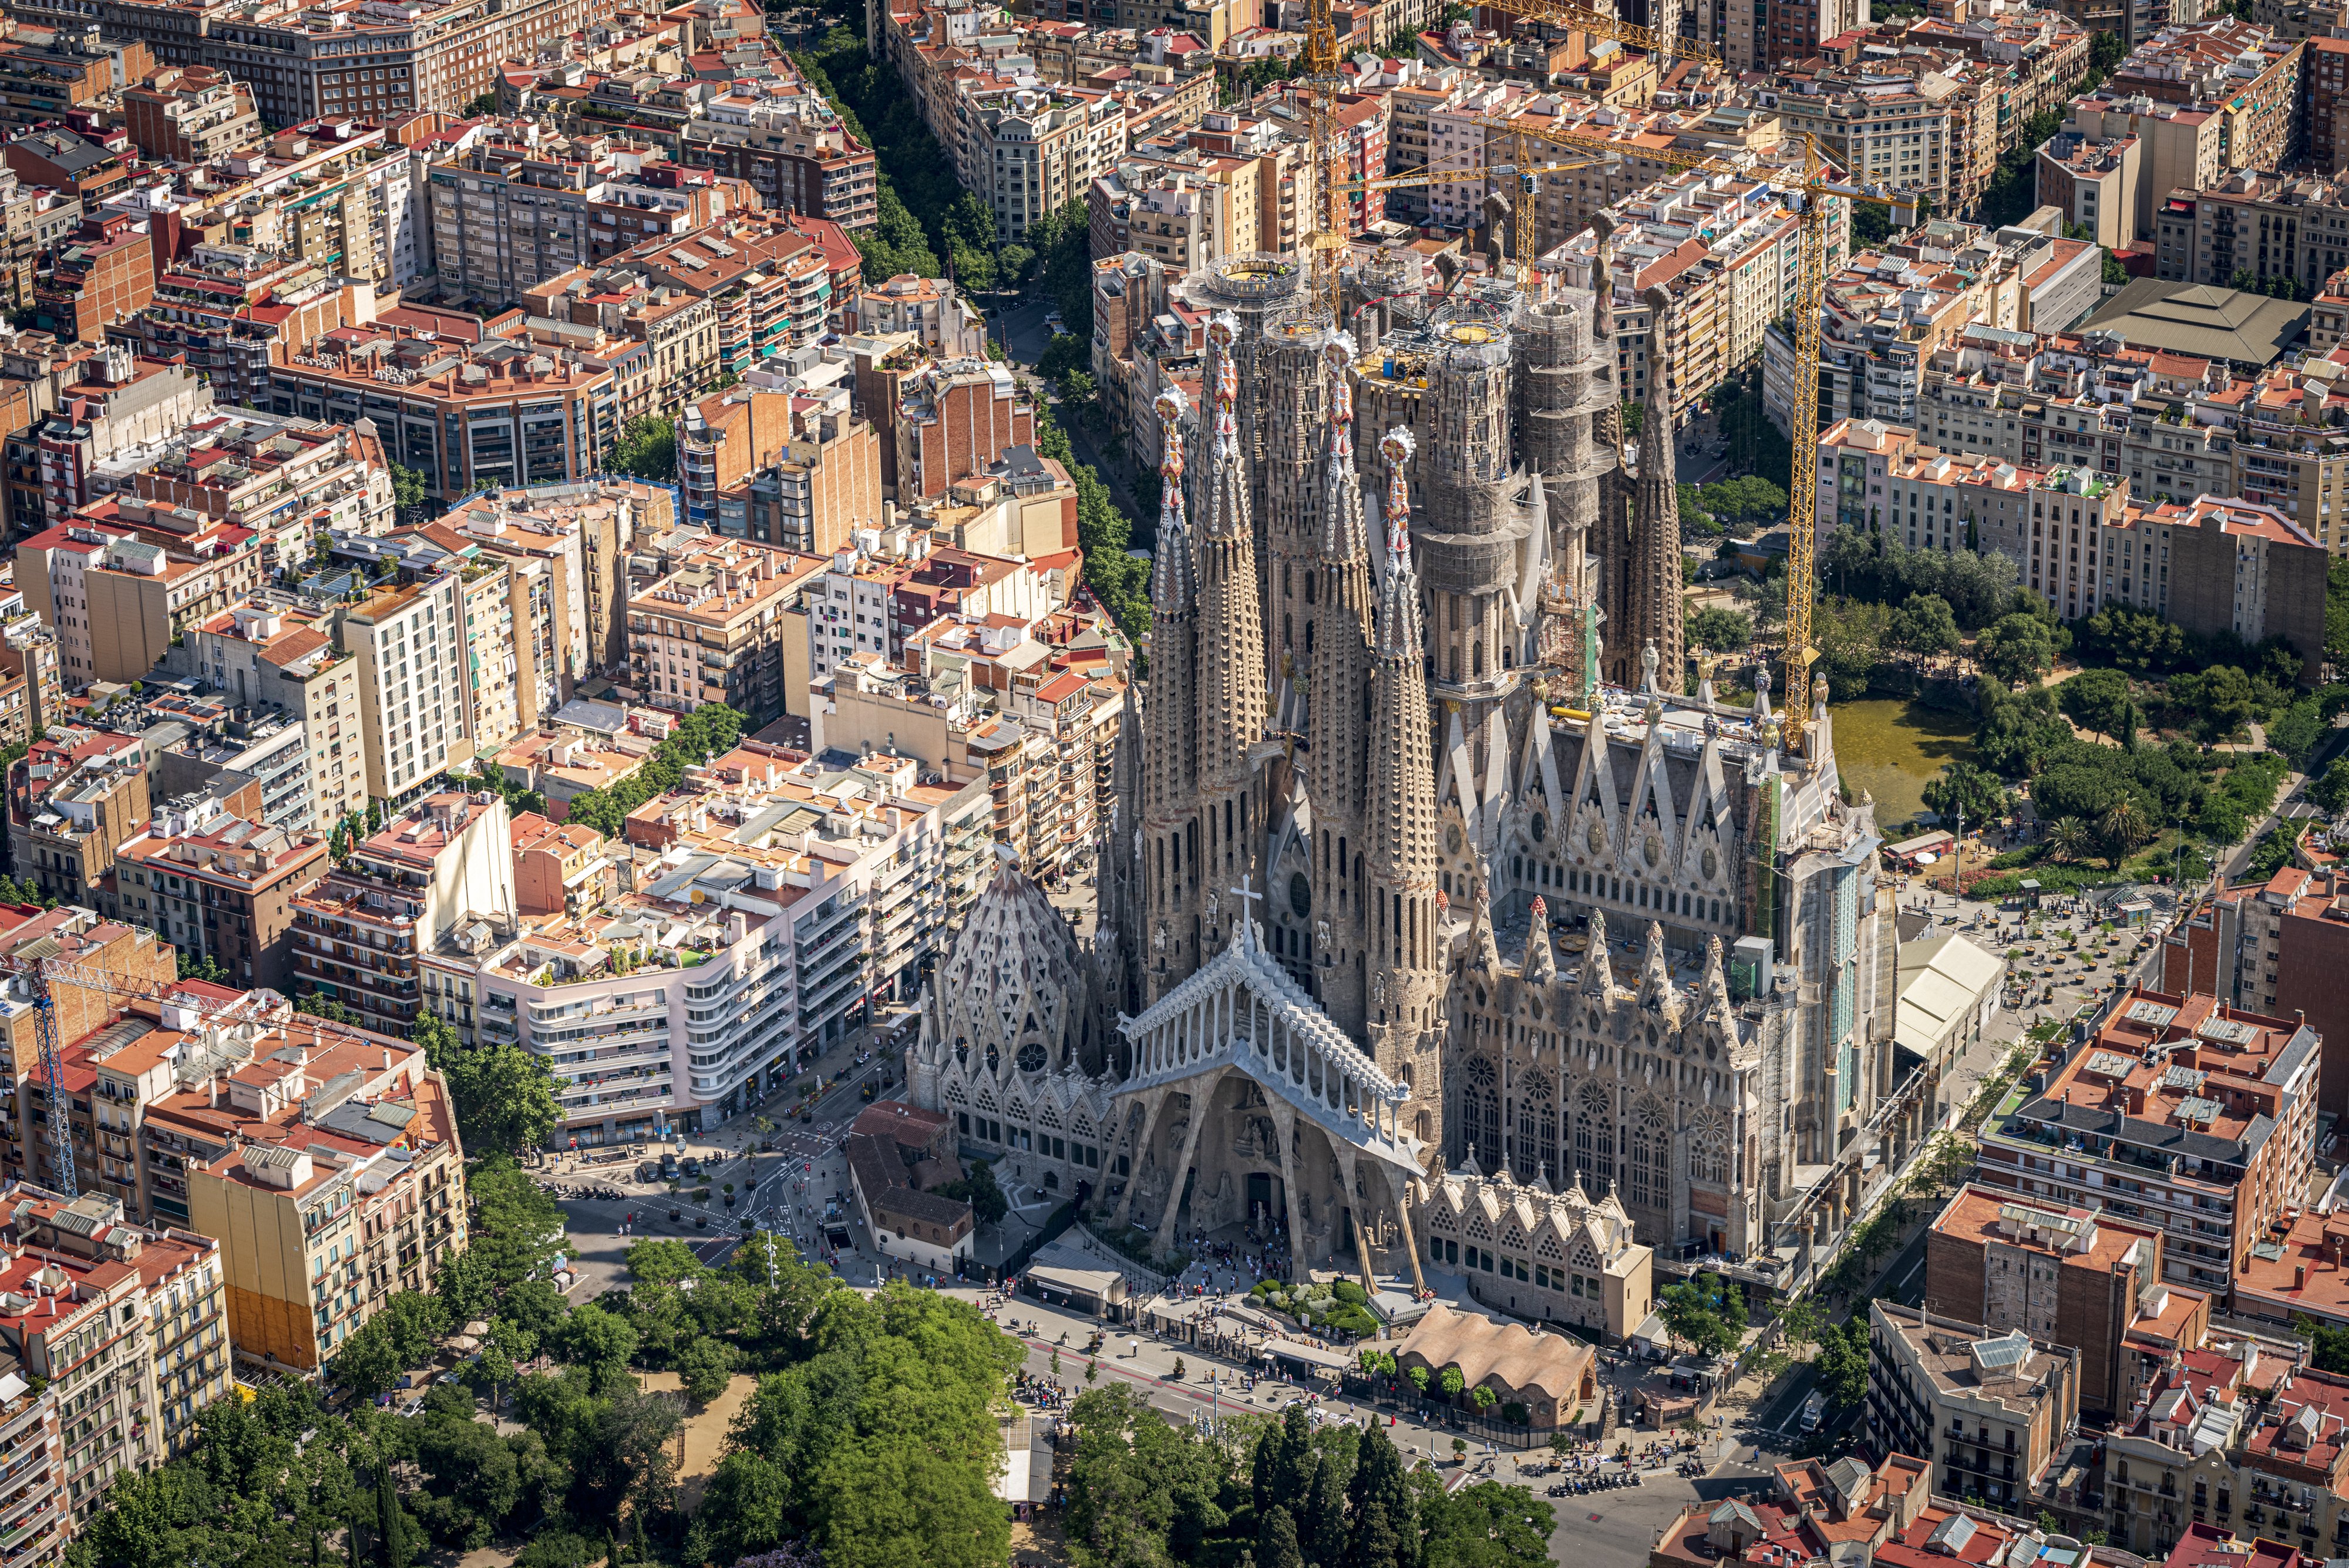 Sagrada Família's main towers now 100 metres tall